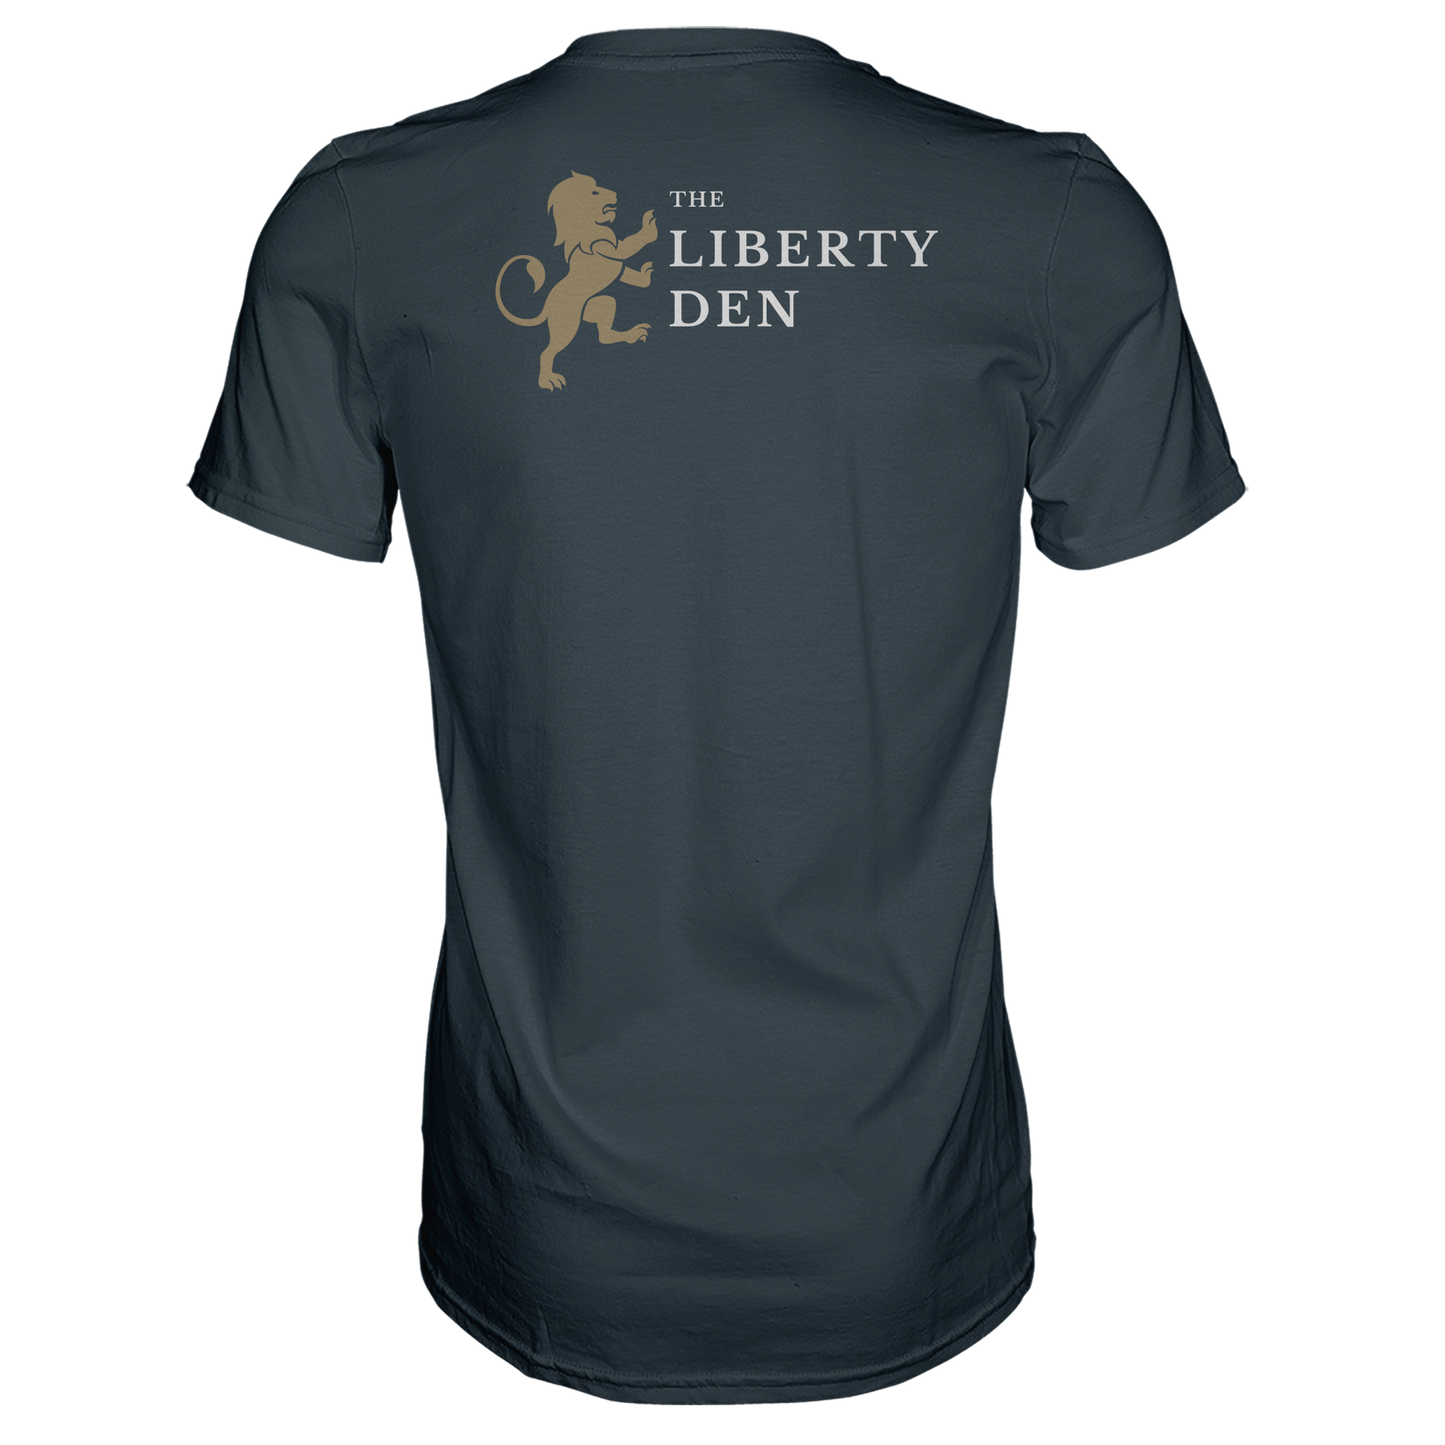 Liberty Den T-Shirt